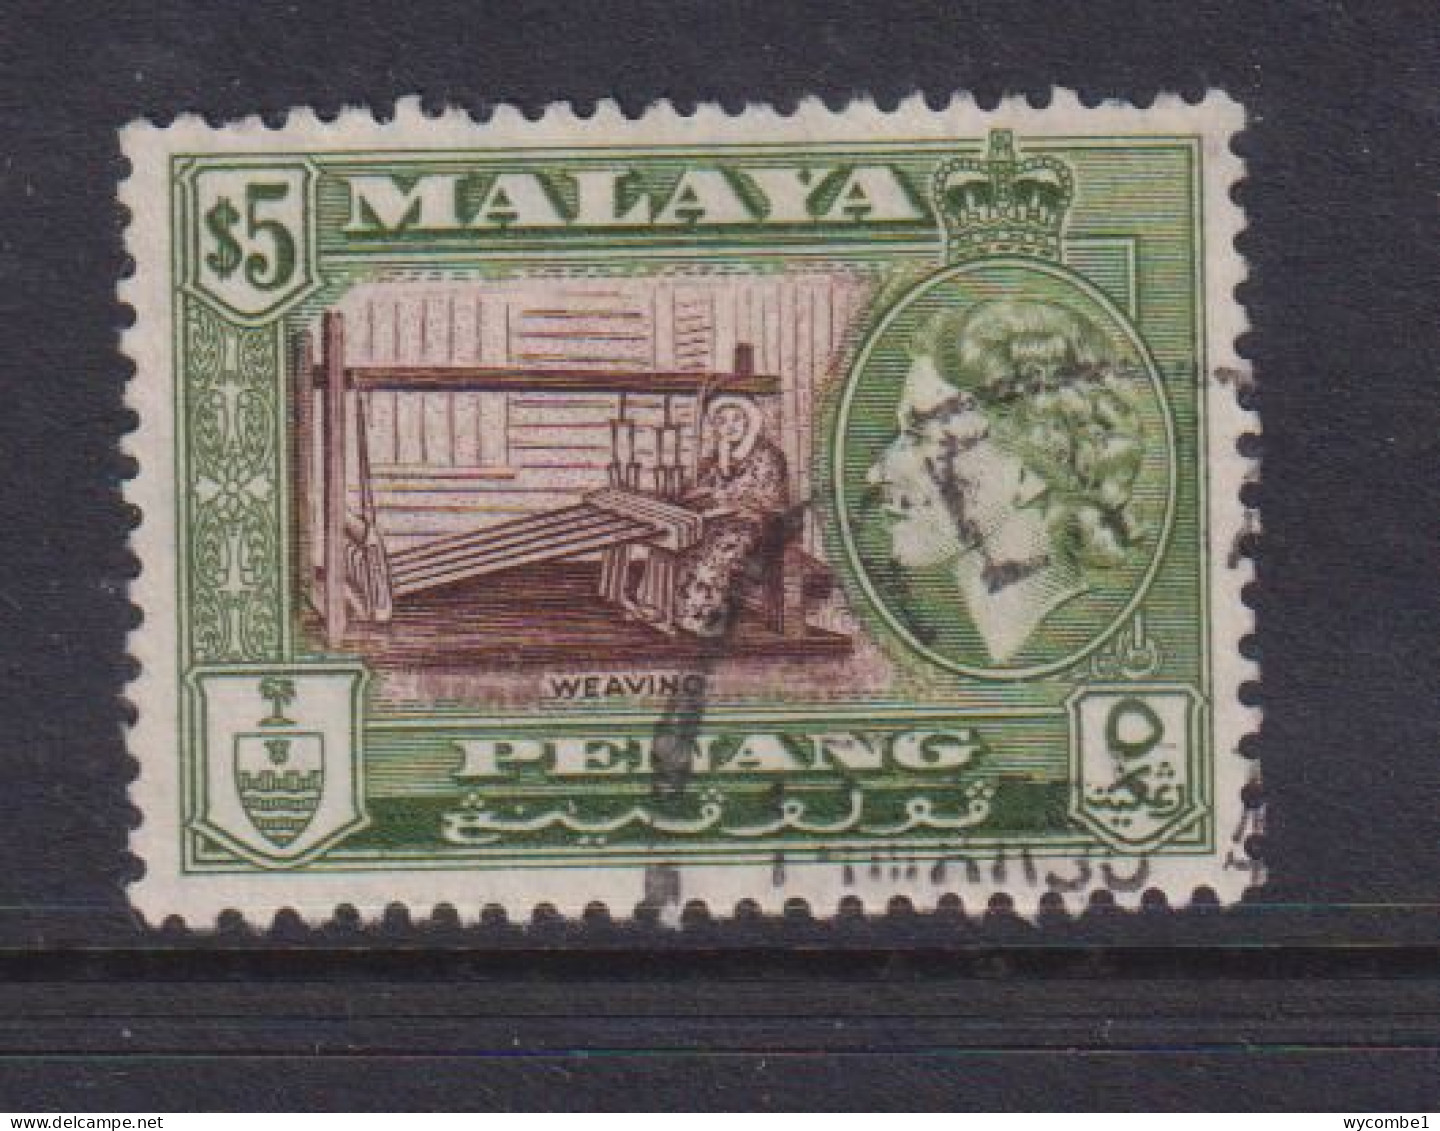 PENANG - 1957 Elizabeth II Pictorial Definitive $5 Used As Scan - Penang